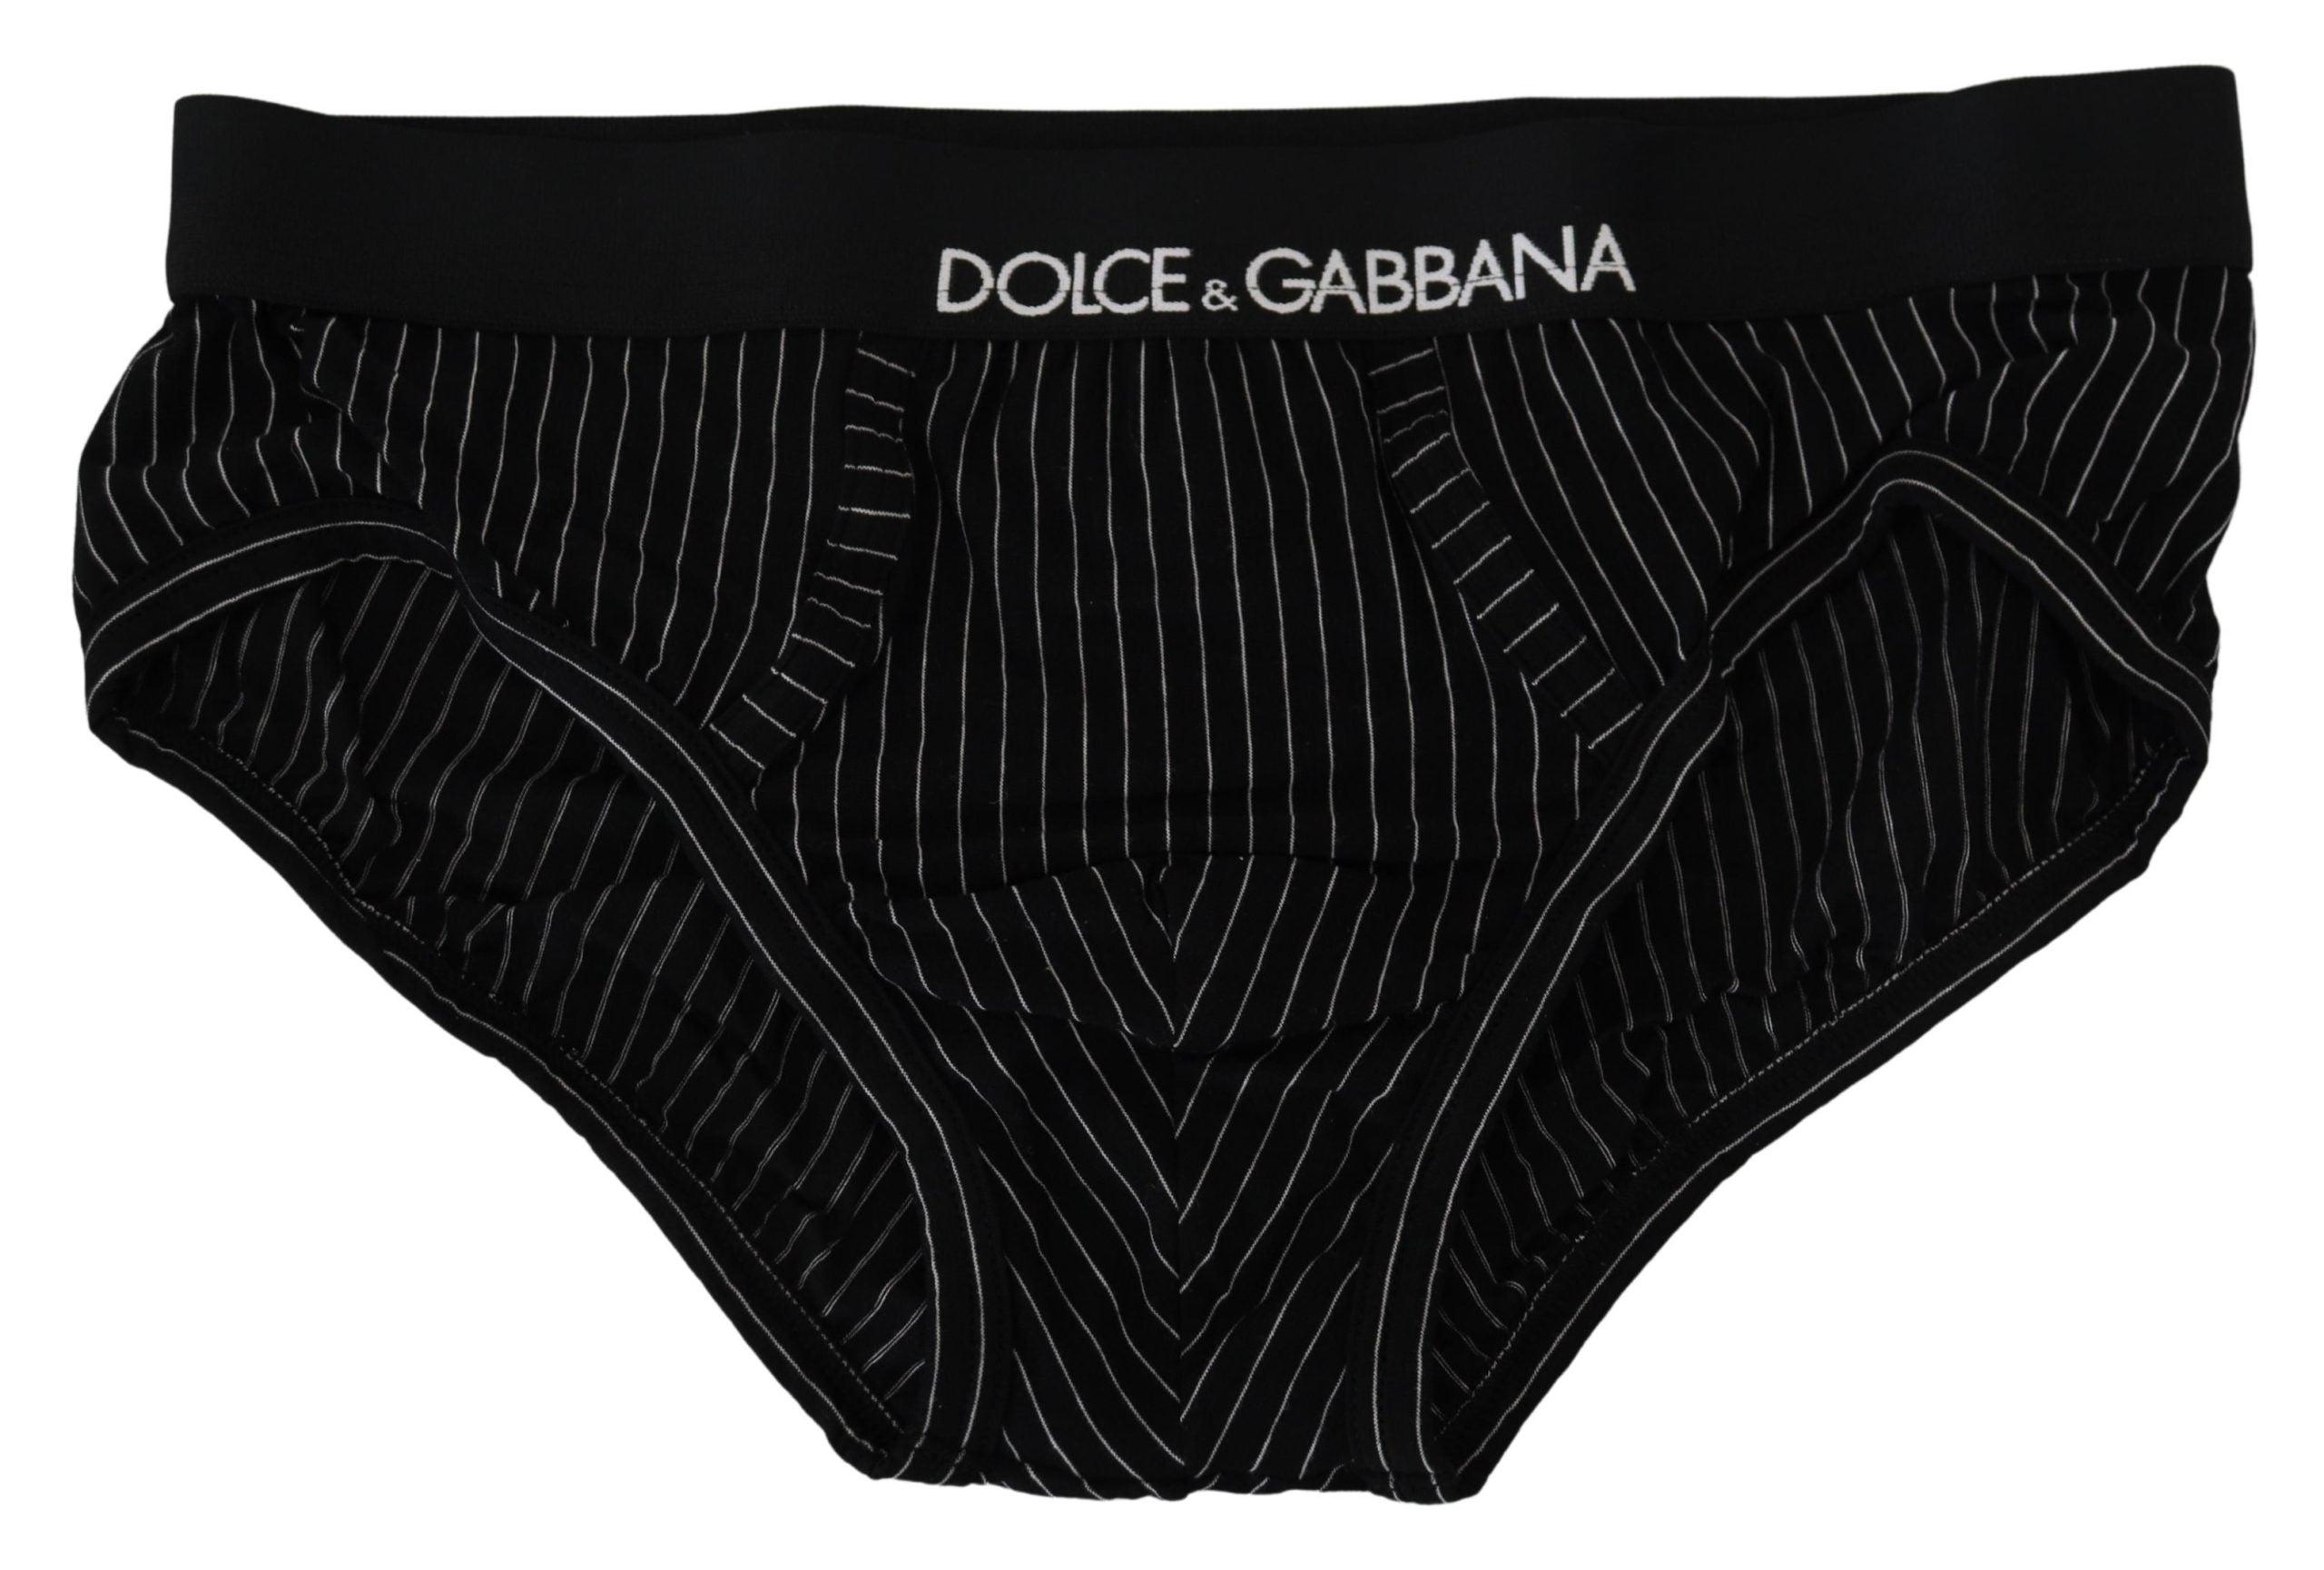 Dolce & Gabbana Black Striped Cotton Brando Brief Underwear for Men